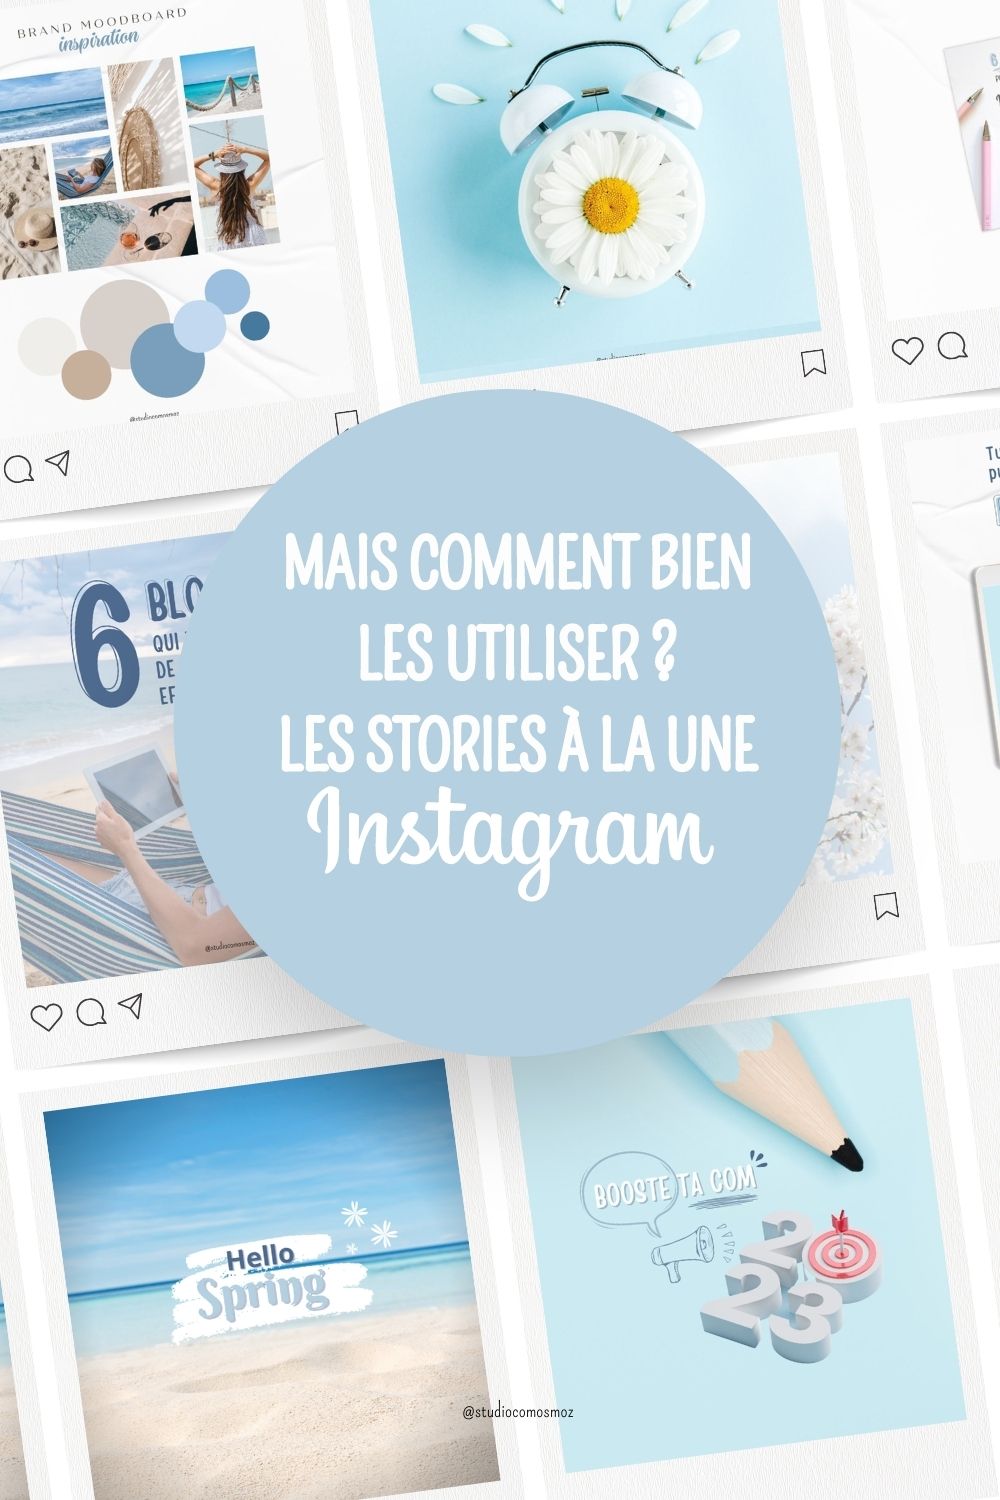 Instagram stories à la une